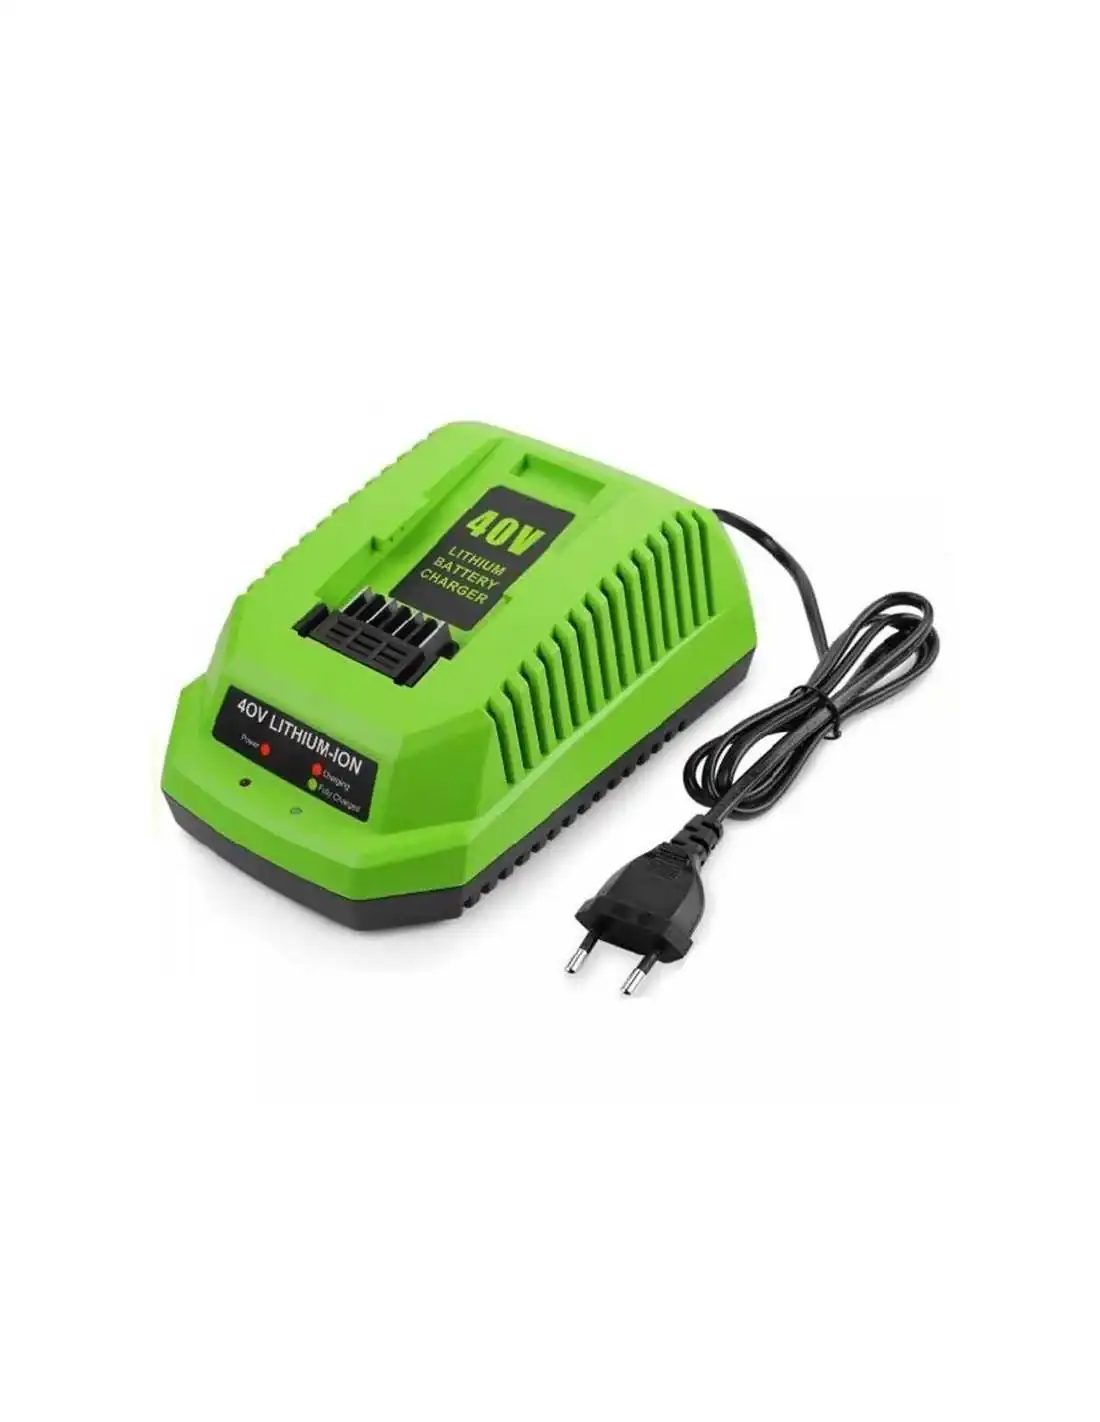 Sostituzione rapida del caricatore della batteria agli ioni di litio da 40 V per utensili elettrici GreenWorks G-MAX 29472